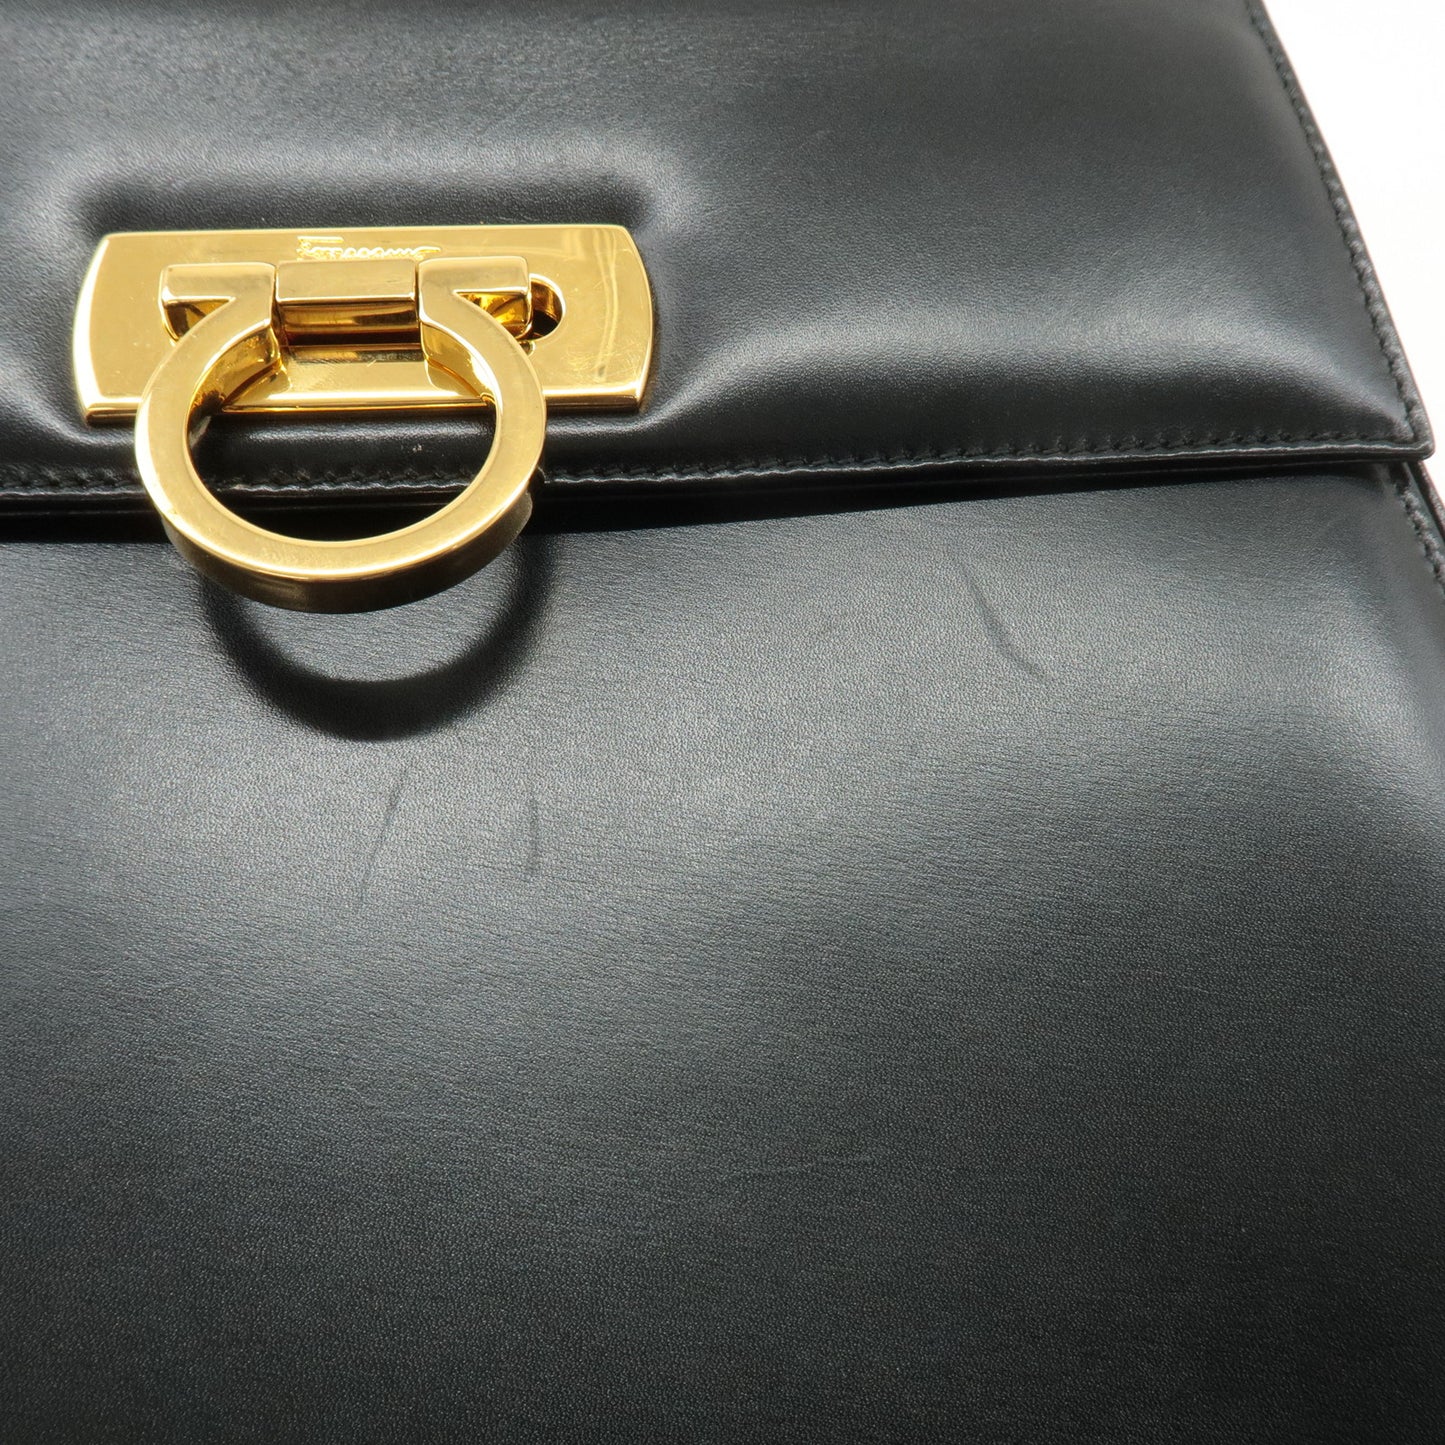 FERRAGAMO Leather Gancini 2Way Hand Shoulder Bag Black AT210536